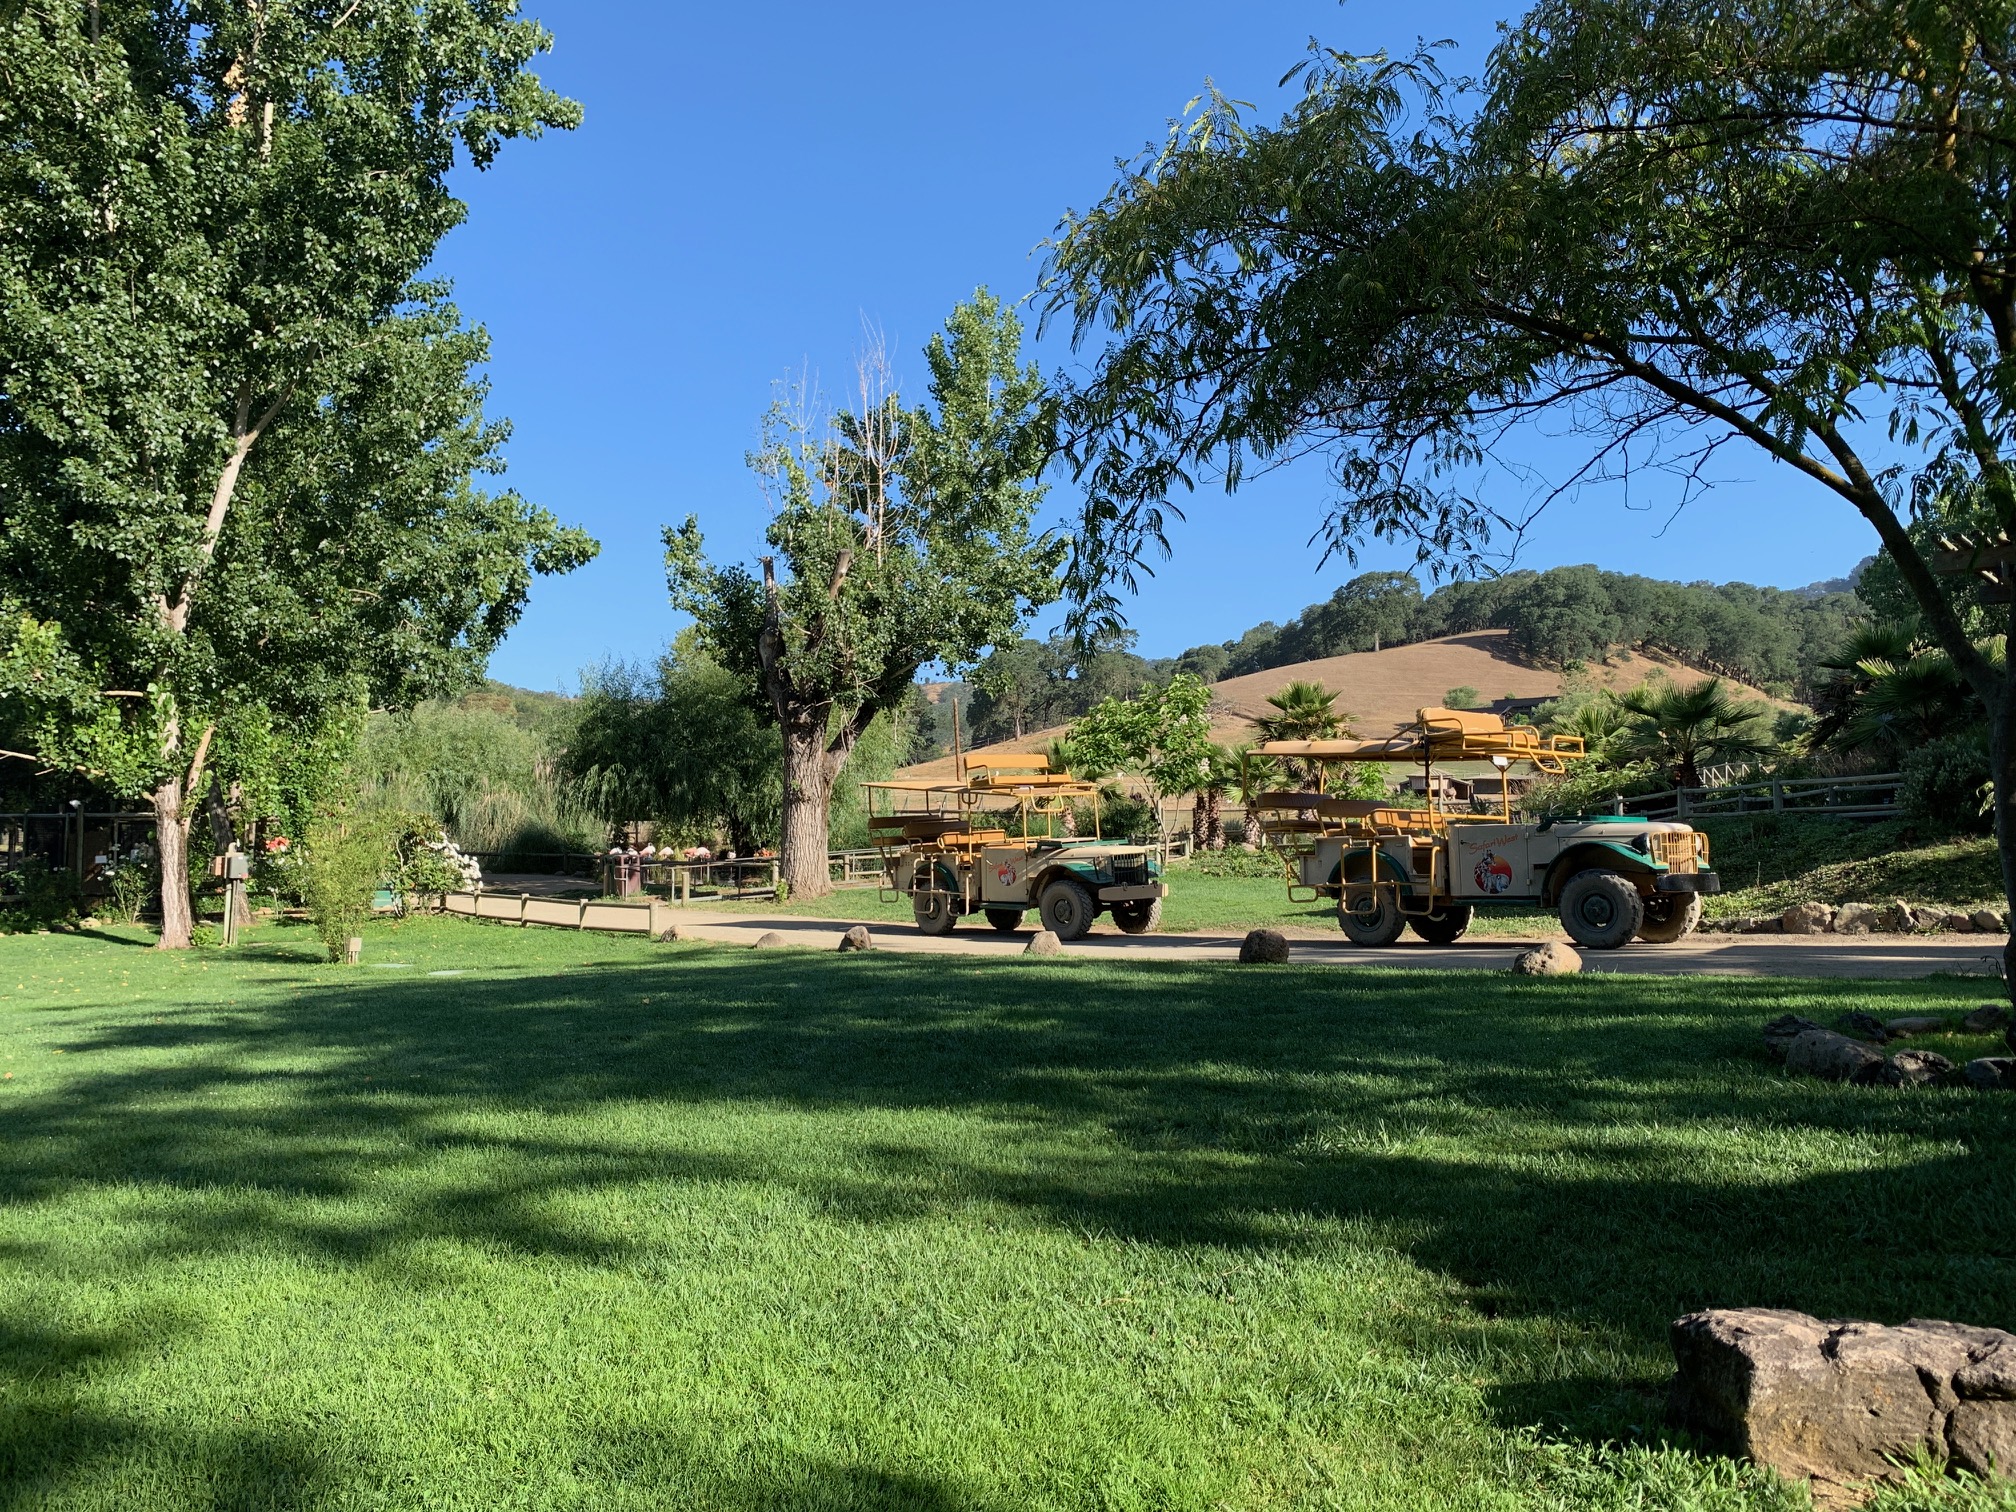 safari jeeps lined up in a grassy area in Safari West in Santa Rosa, California